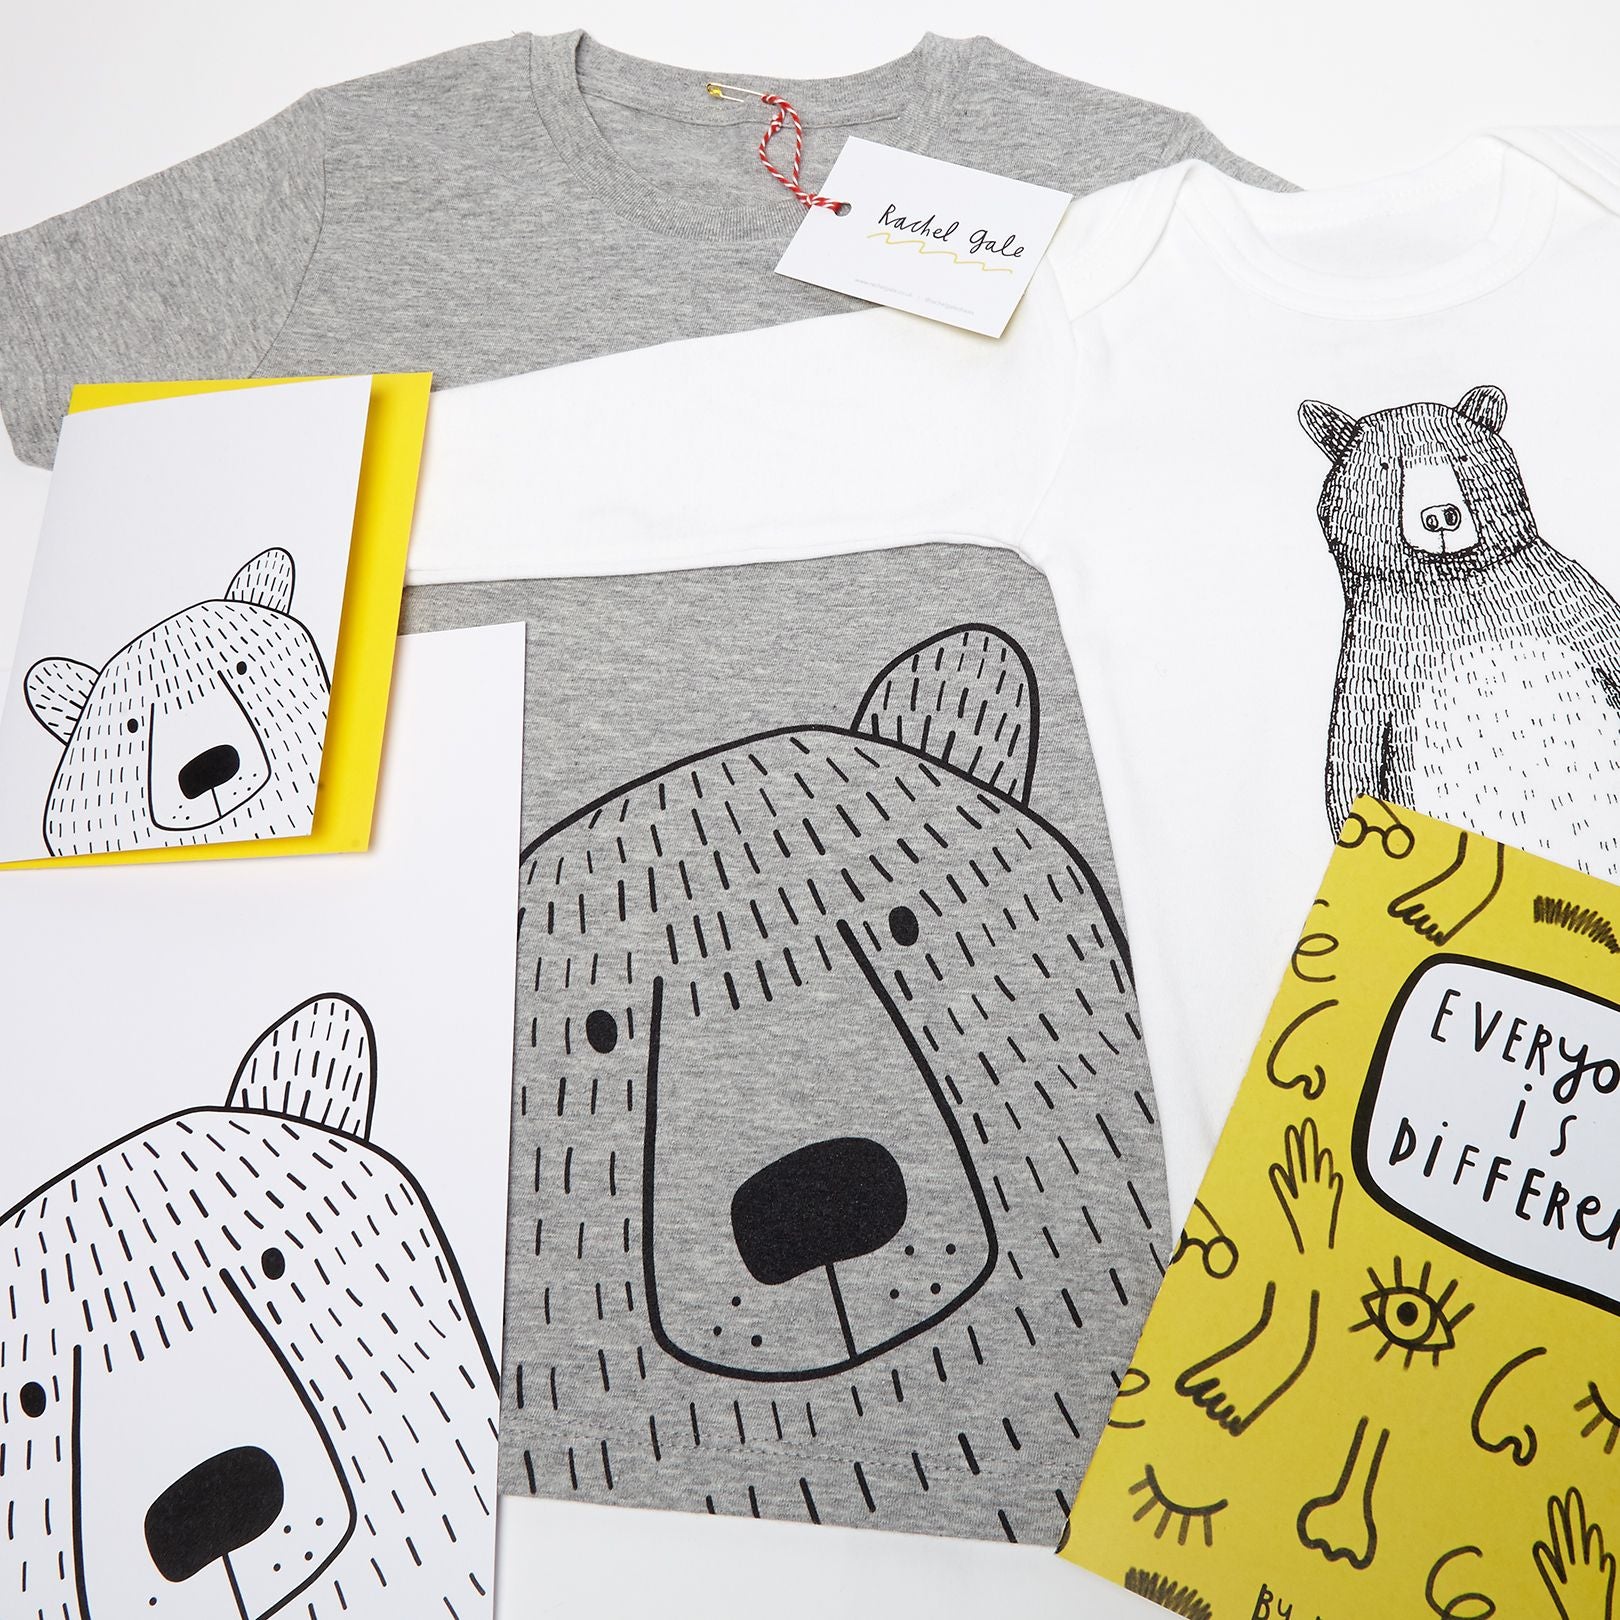 Mr Bear Peek-a-boo - A6 Greetings Card - Planet-friendly materials